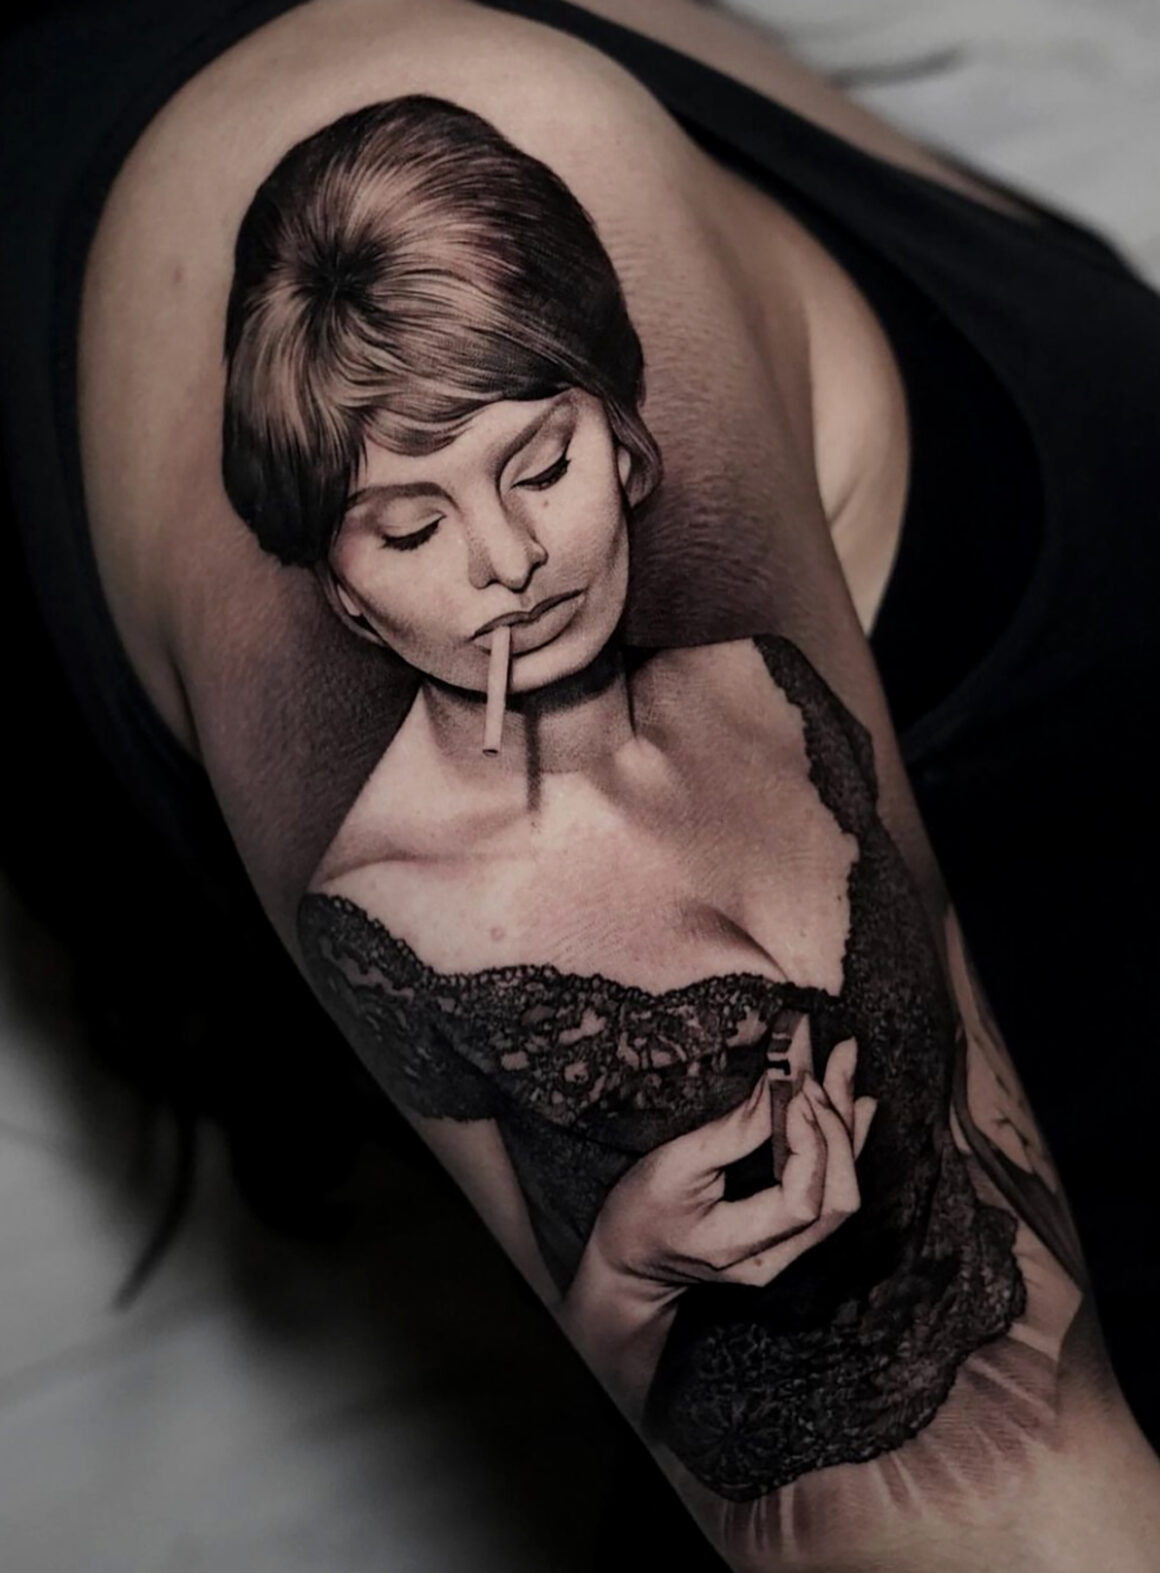 Tattoo by Giacomo Bellato, @giacomo_bellato